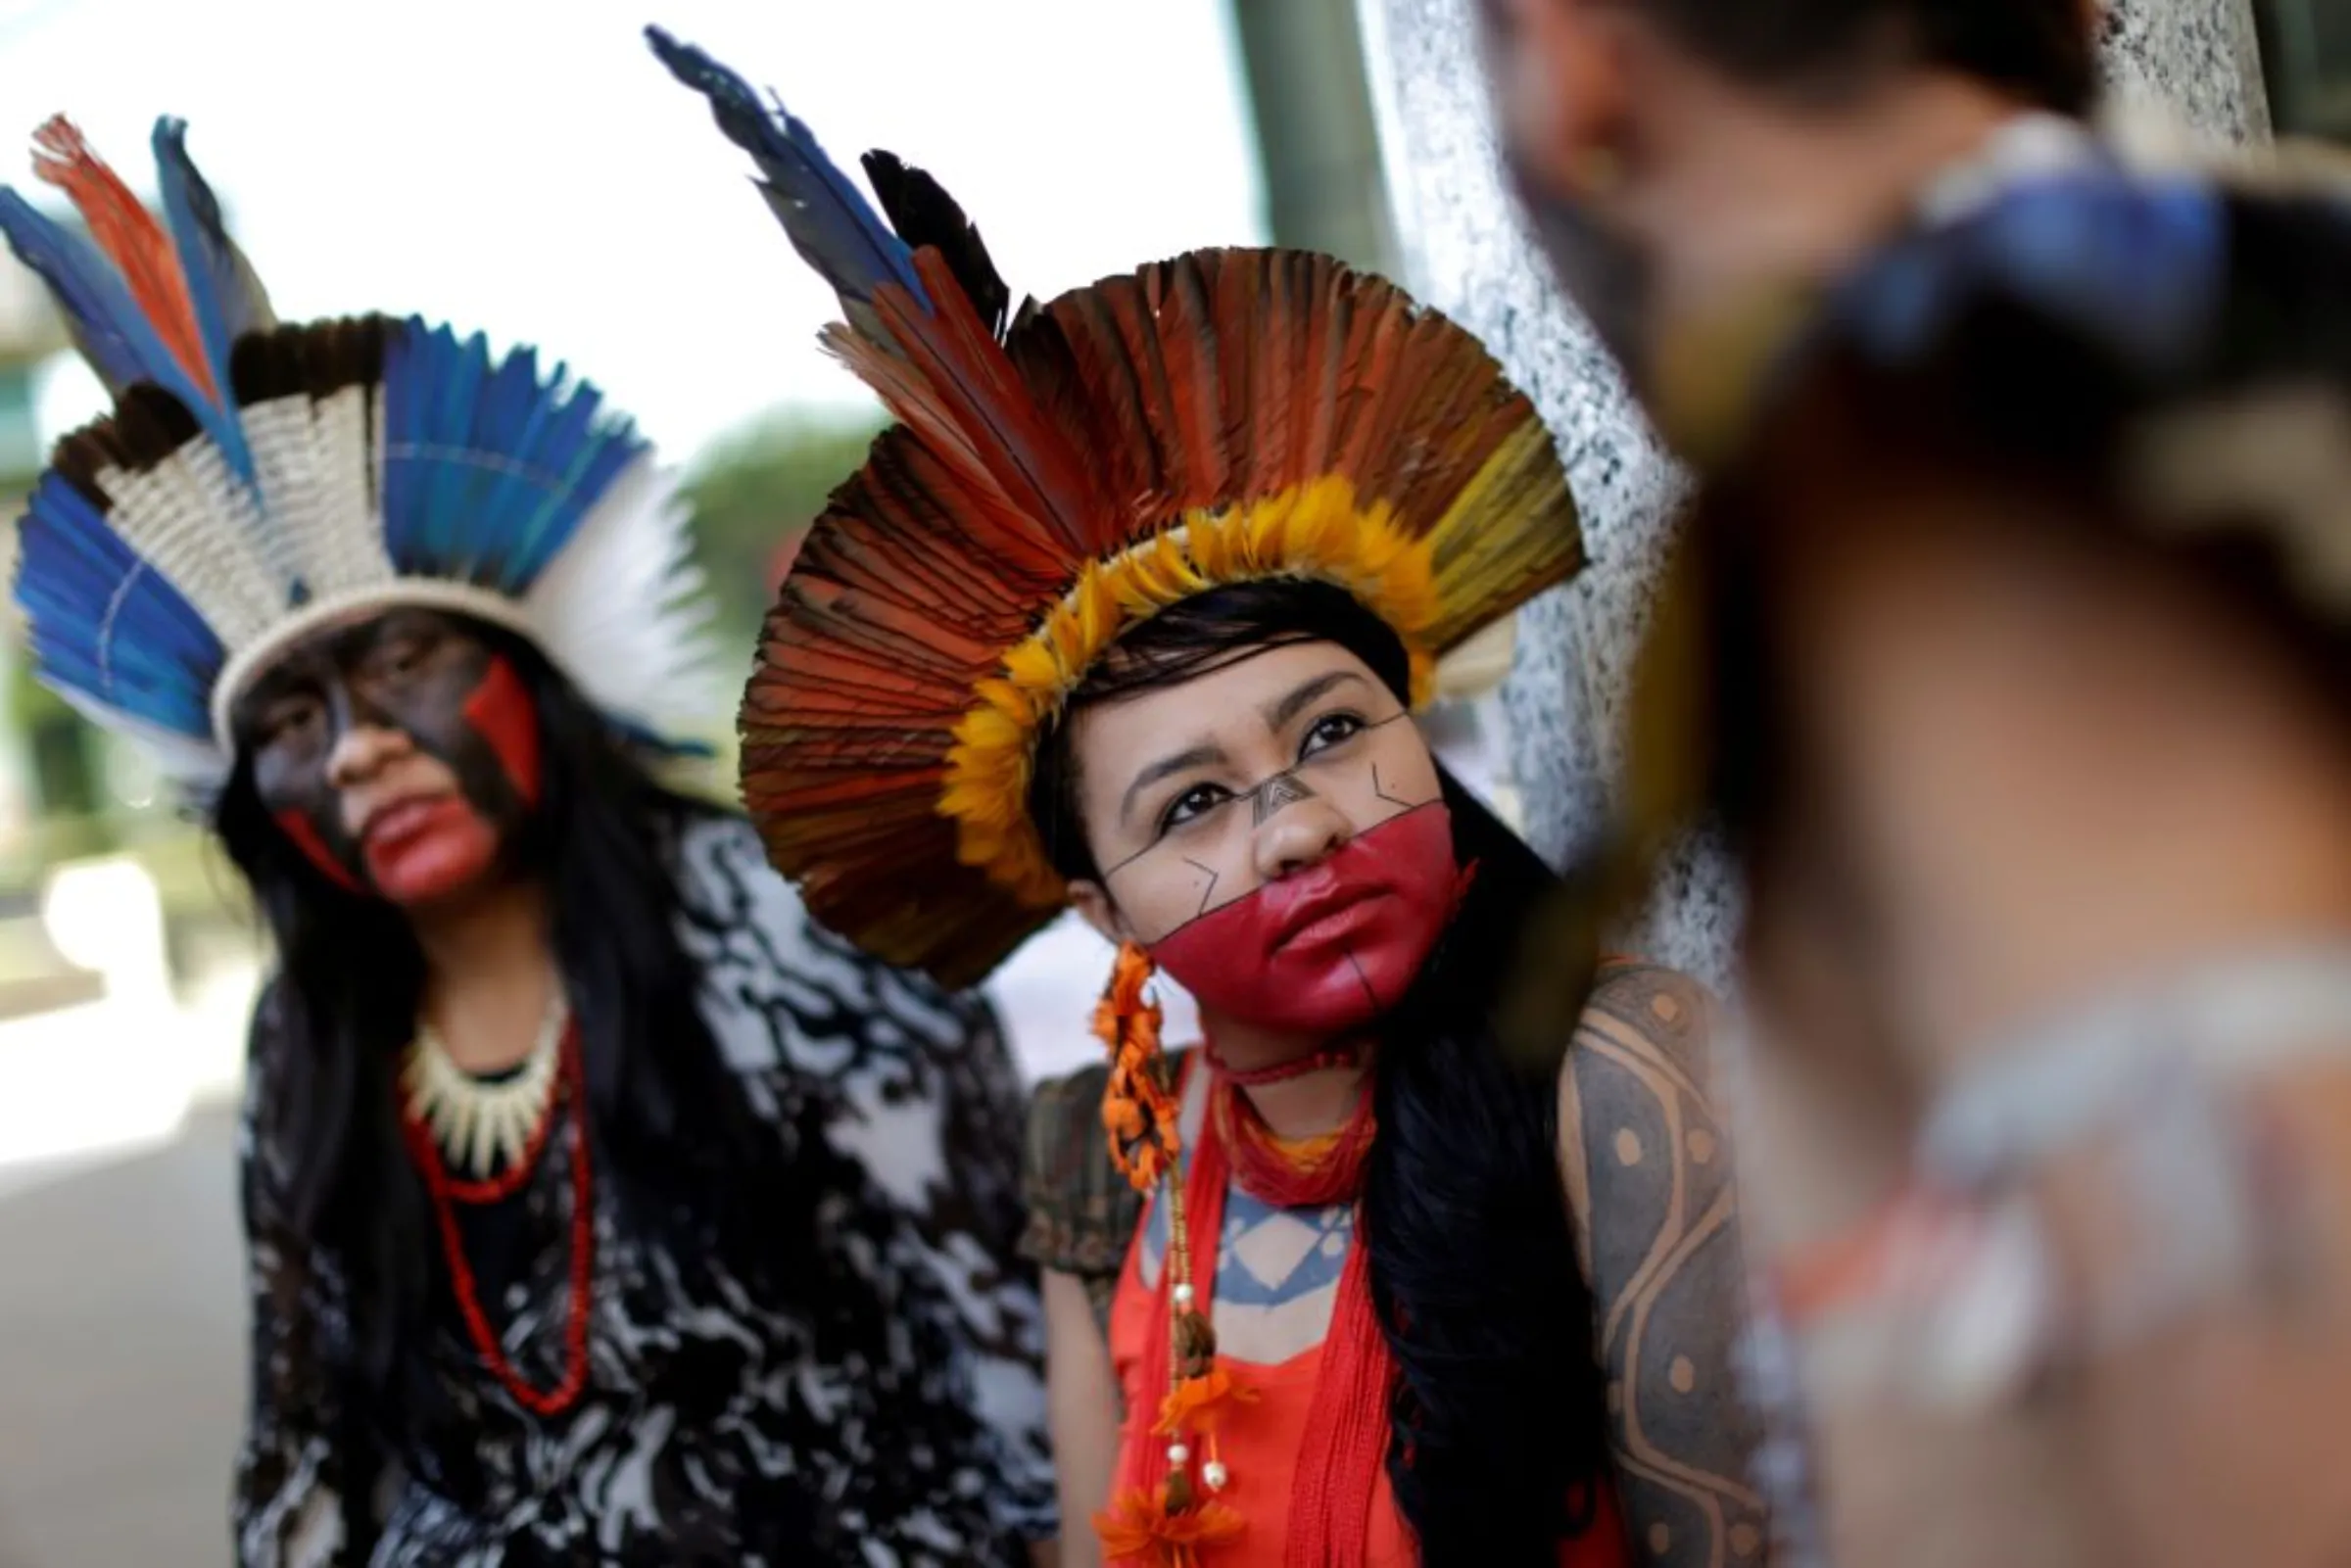 An indigenous Brazilian takes part in a protest in Brasilia, Brazil, on July 13, 2016. REUTERS/Ueslei Marcelino